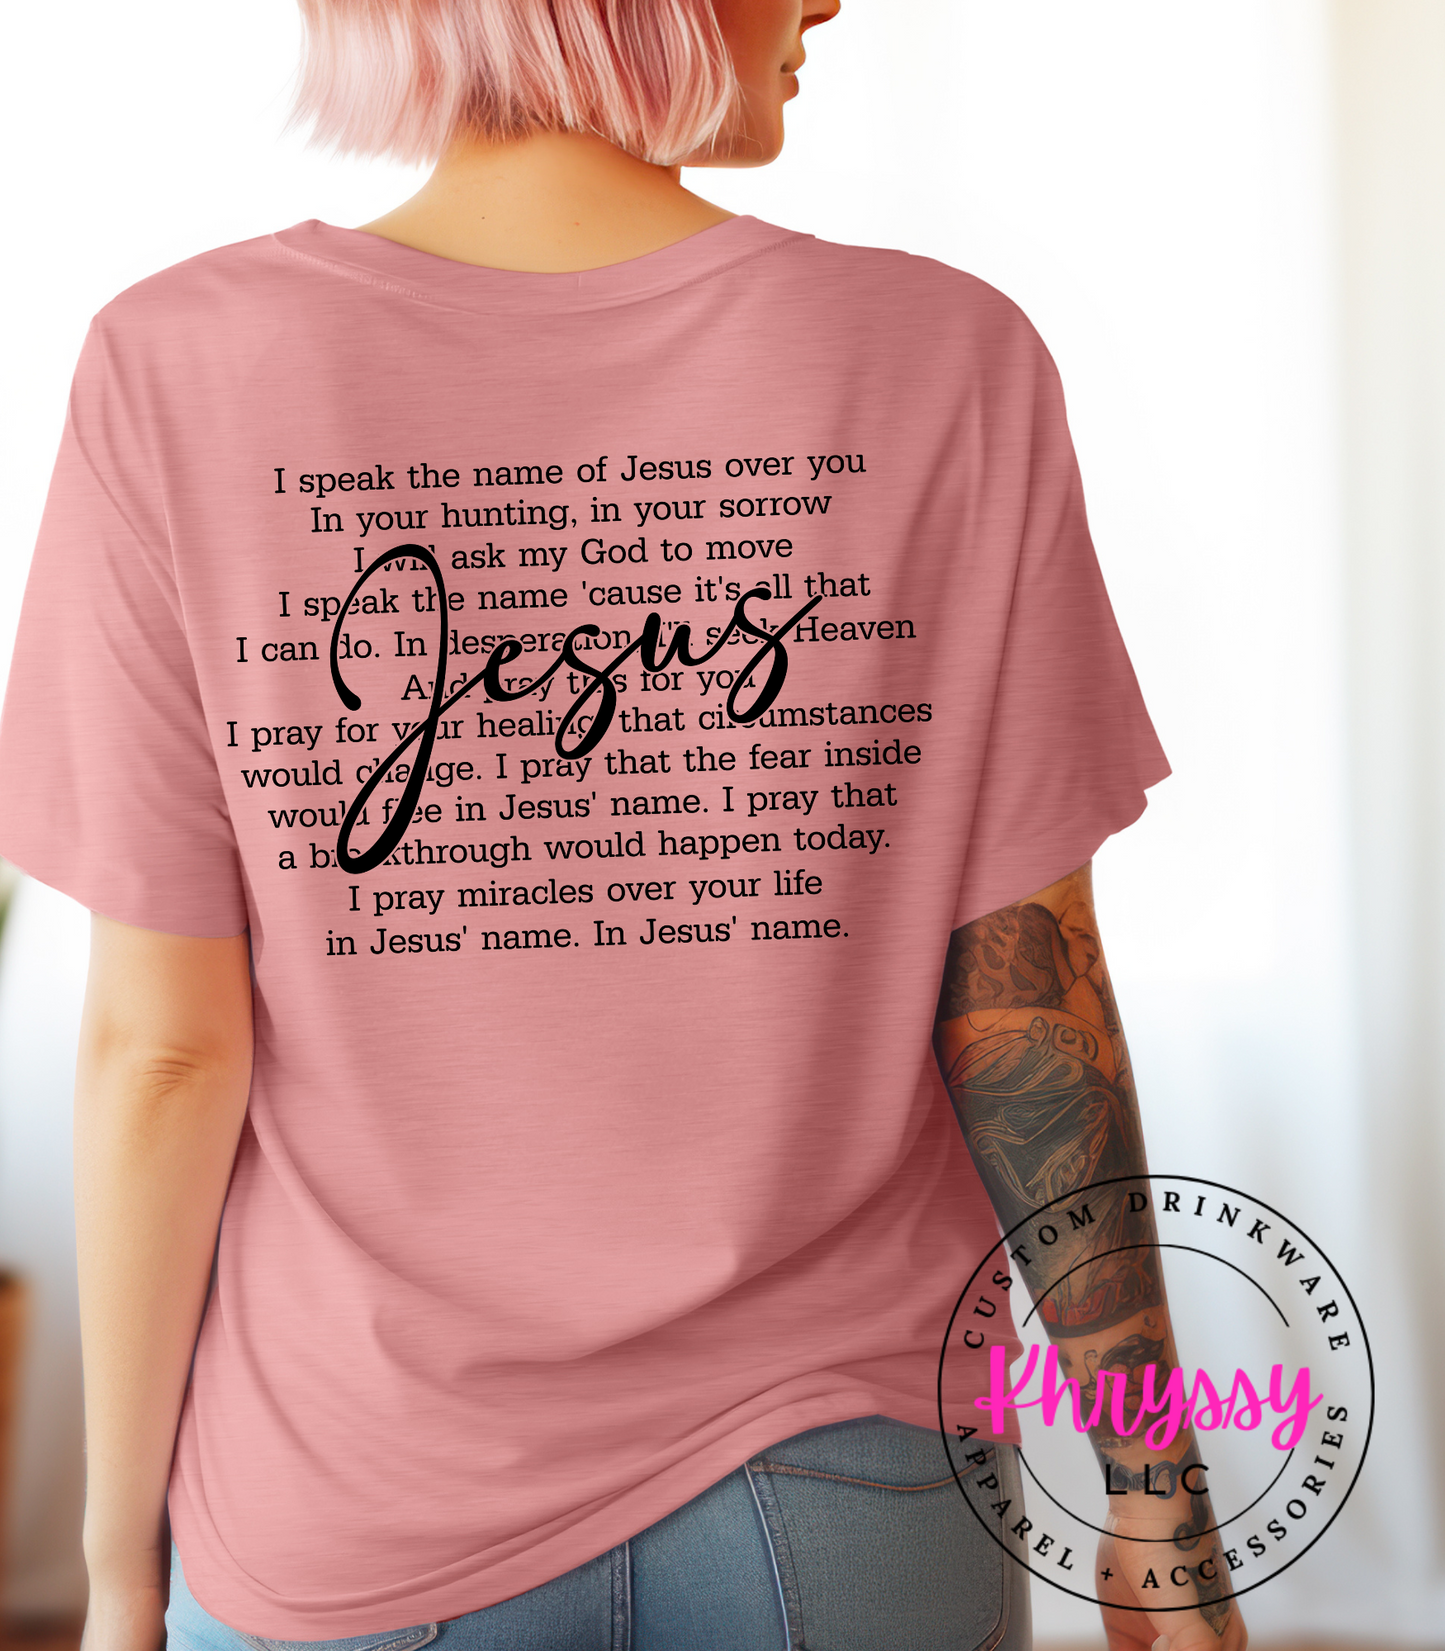 I Speak the Name of Jesus: Faithful Unisex Shirt